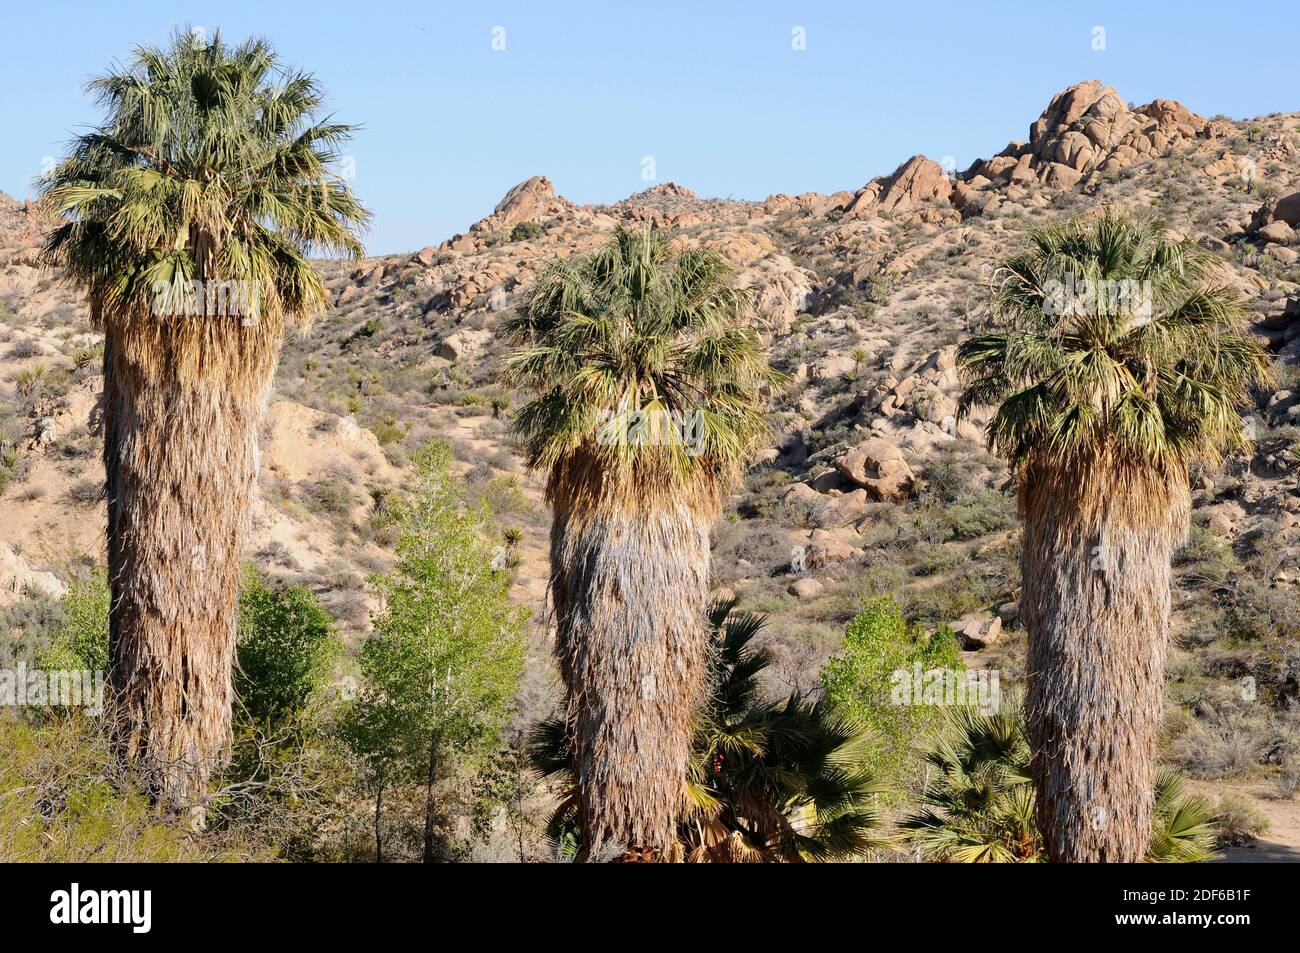 Kalifornische Fächerpalme oder Wüstenfächerpalme (Washingtonia filifera) ist eine Palme, die im Südwesten der USA und in Baja California (Mexiko) beheimatet ist. Ist weit verbreitet Stockfoto